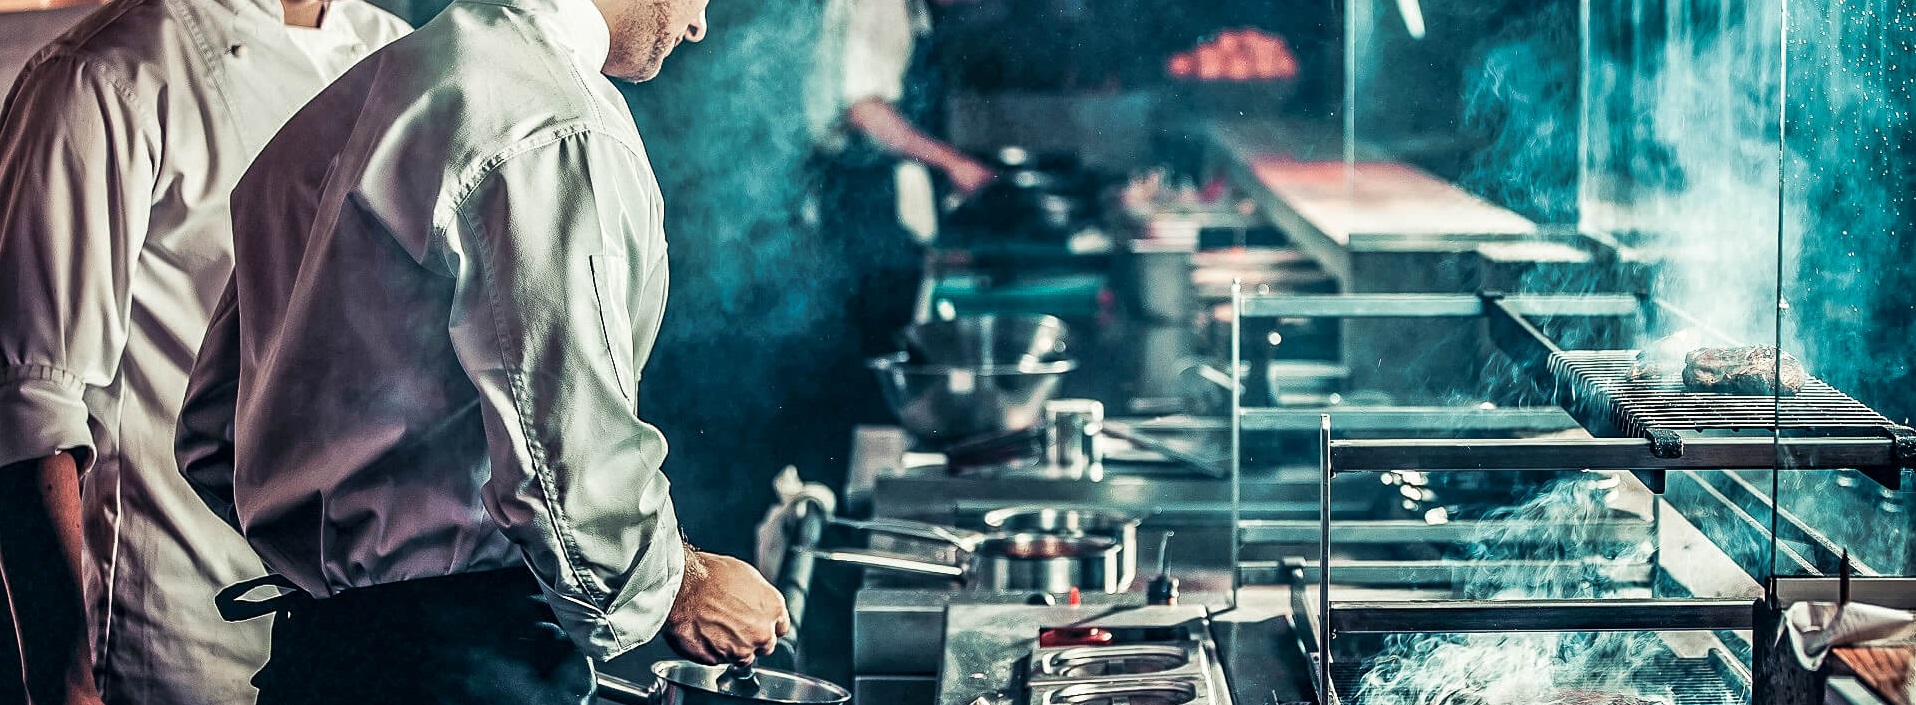 Gastronomie: Selfmade-Millionäre bei der Arbeit in der Küche